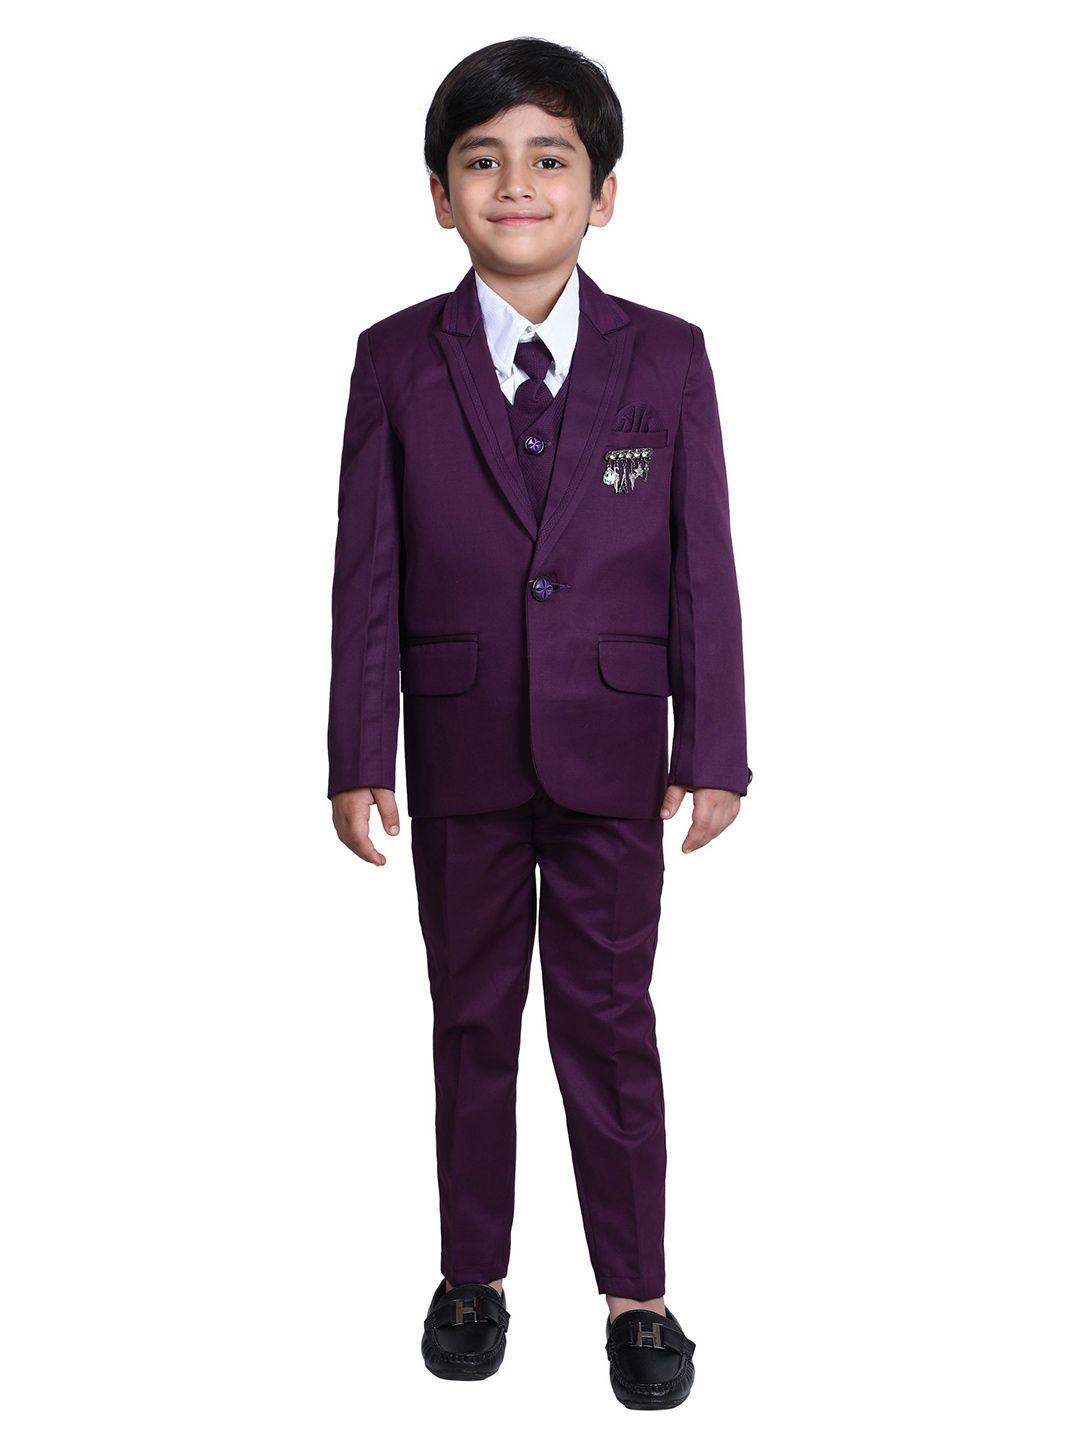 dkgf fashion boys 5-piece suit